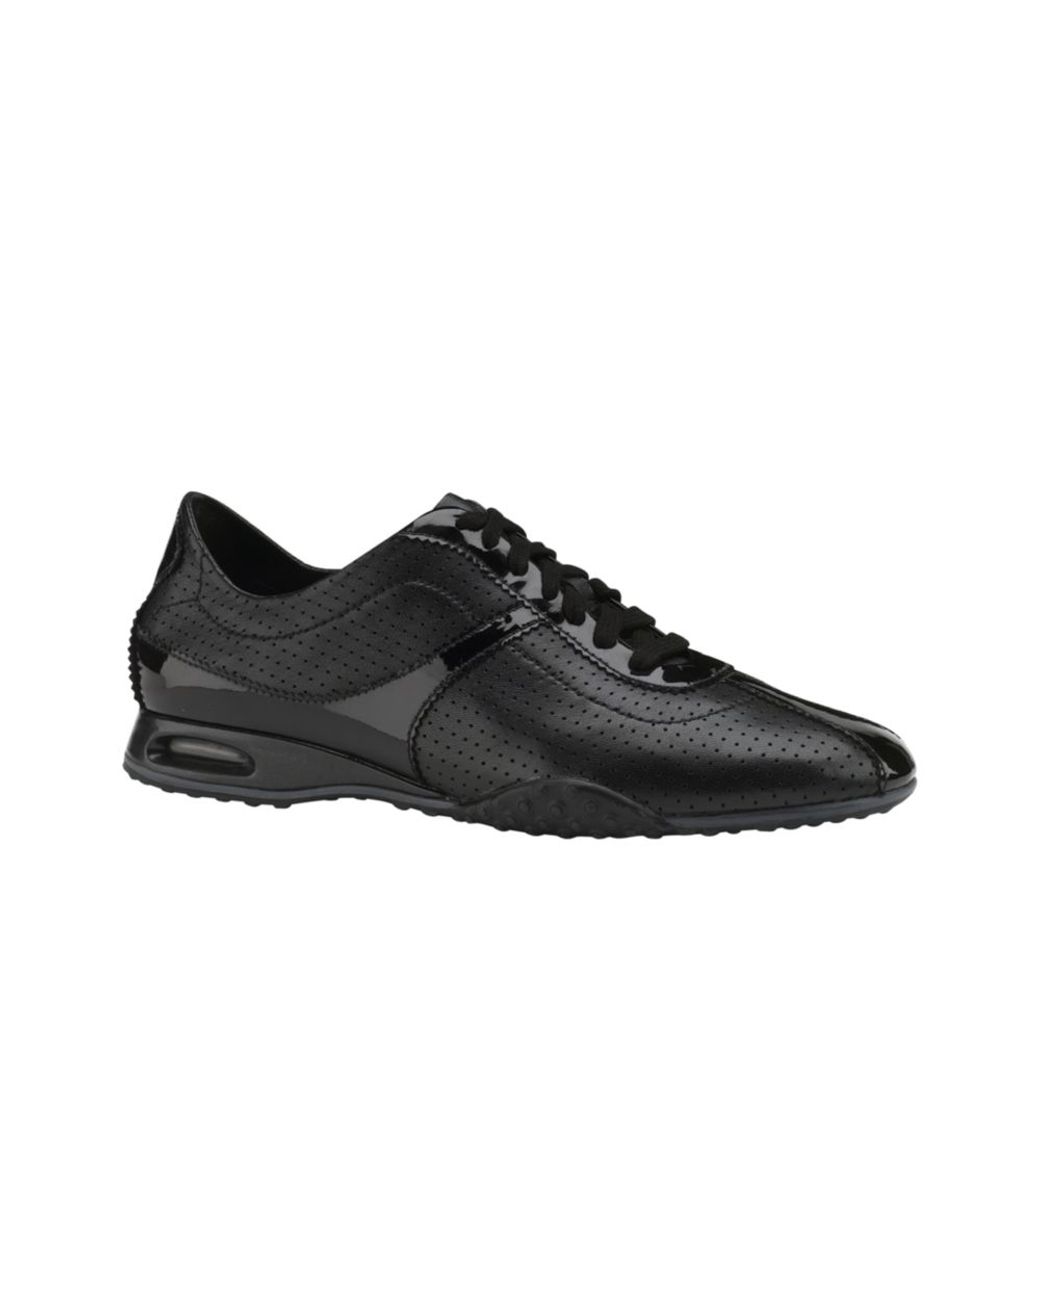 Cole Haan Air Bria Sneakers in Black | Lyst